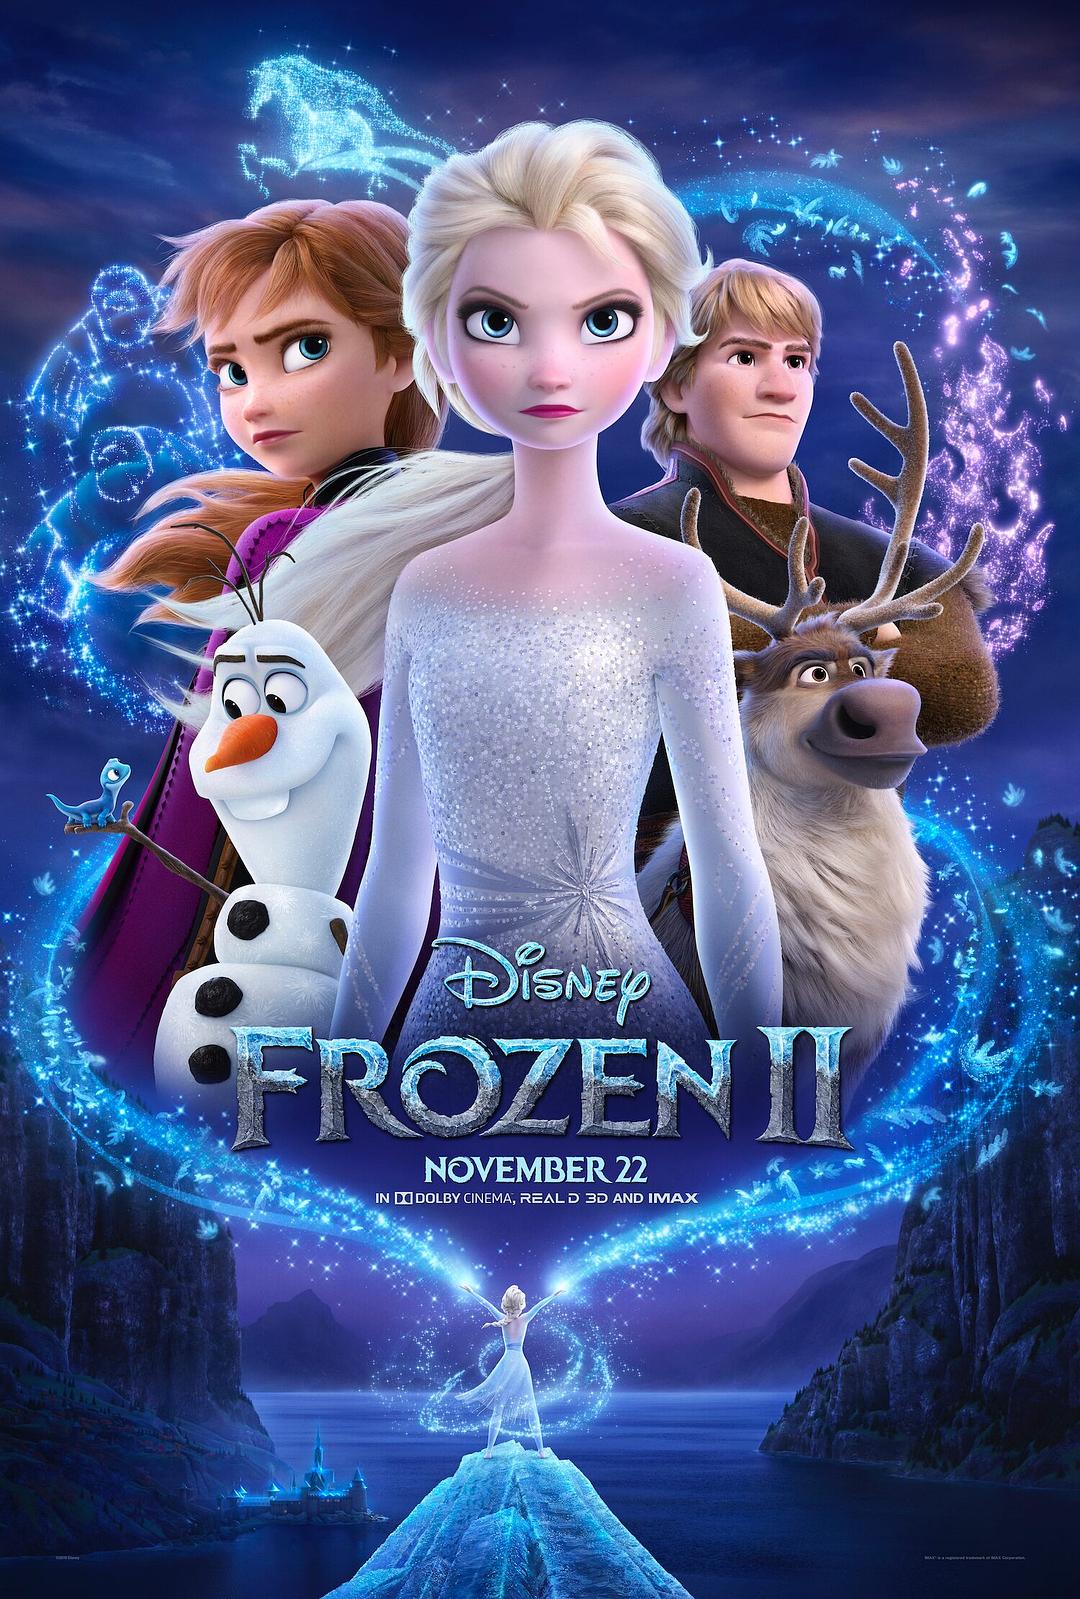 冰雪奇缘2 4K蓝光原盘下载+高清MKV版/魔雪奇缘2(港) 2019 Frozen II 57.0G